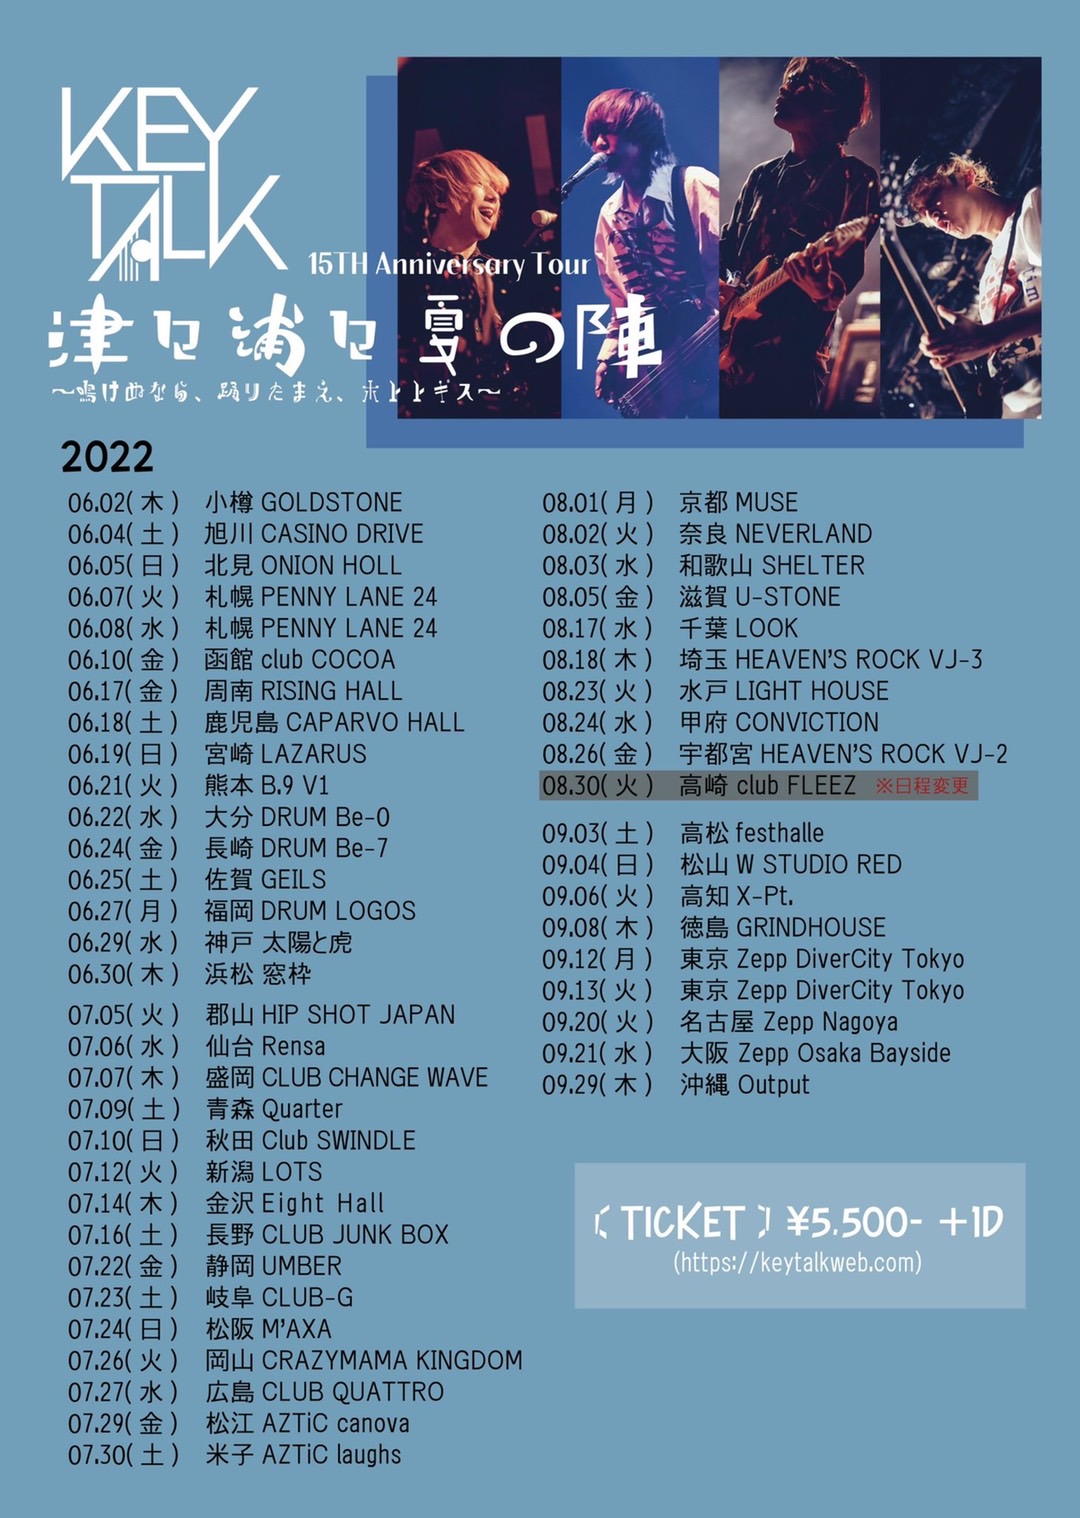 KEYTALK 15th Anniversary Tour「津々浦々夏の陣〜鳴けぬなら、踊りたまえ、ホトトギス〜」